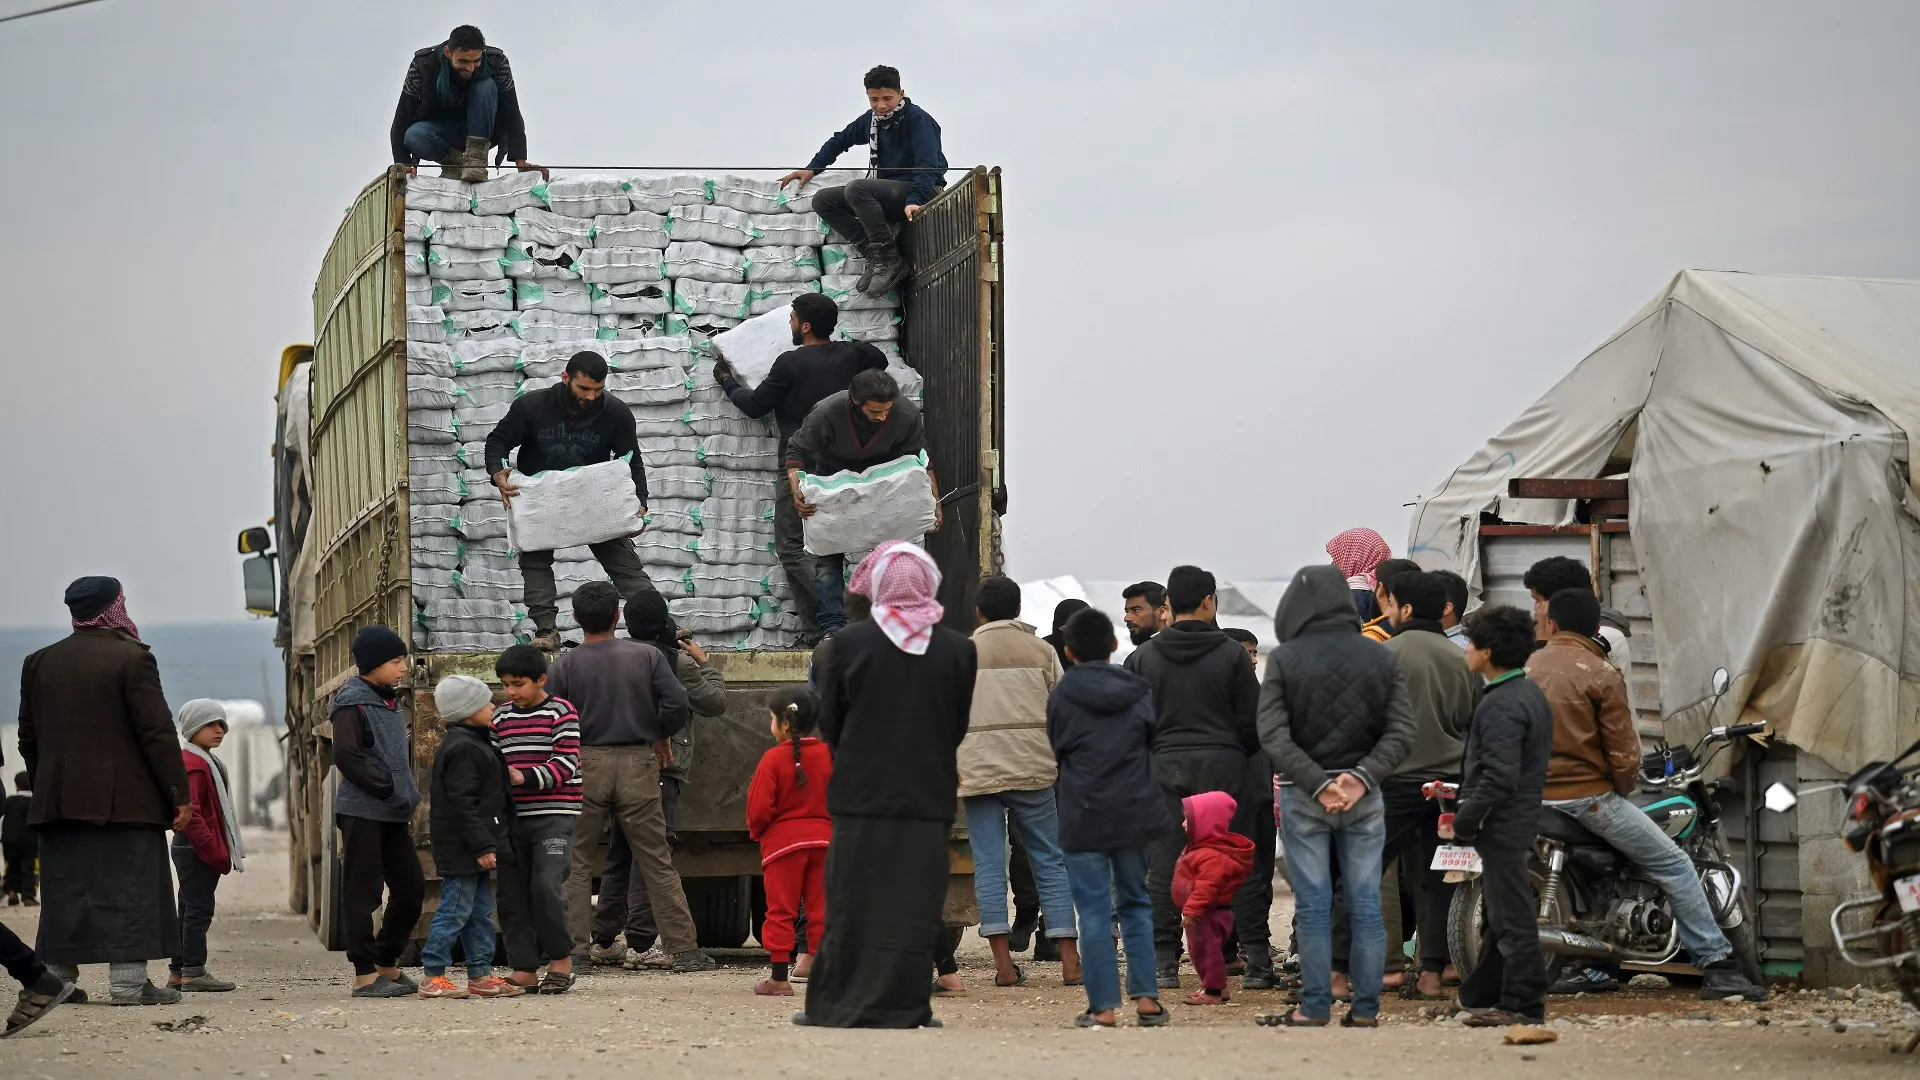 تقرير لـ "أوتشا" يؤكد ارتفاع عدد السوريين المحتاجين لمساعدات إنسانية